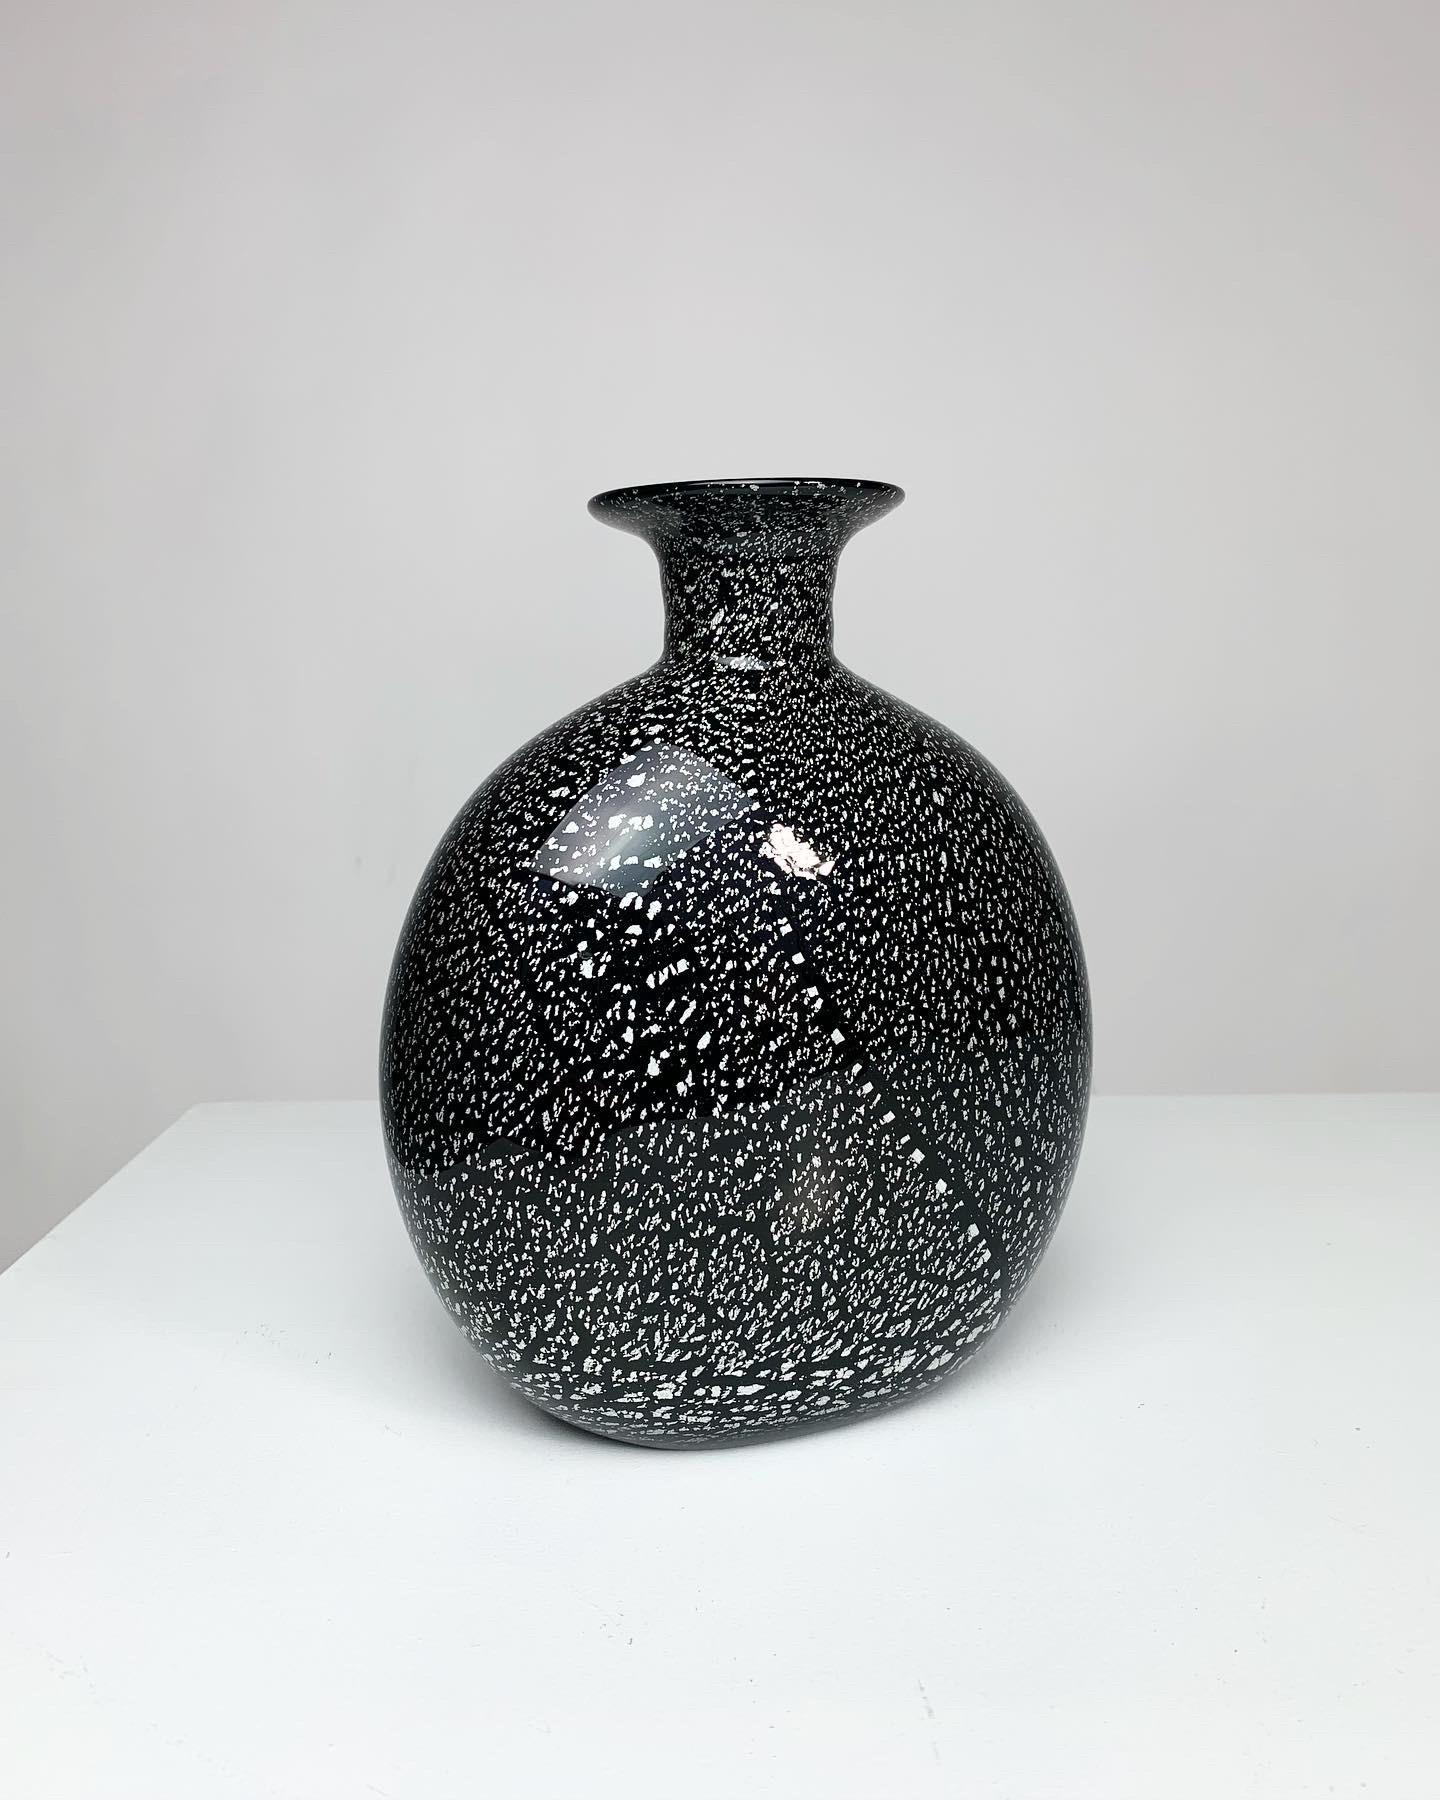 Vase en verre chatoyant d'Archimede Seguso, soufflé à la bouche à Murano dans les années 1970. Verre noir avec des mouchetures d'argent, belle pièce façonnée à la main.
 
Reste l'autocollant original du fabricant.
 
Hauteur : 20 cm
Largeur : 16